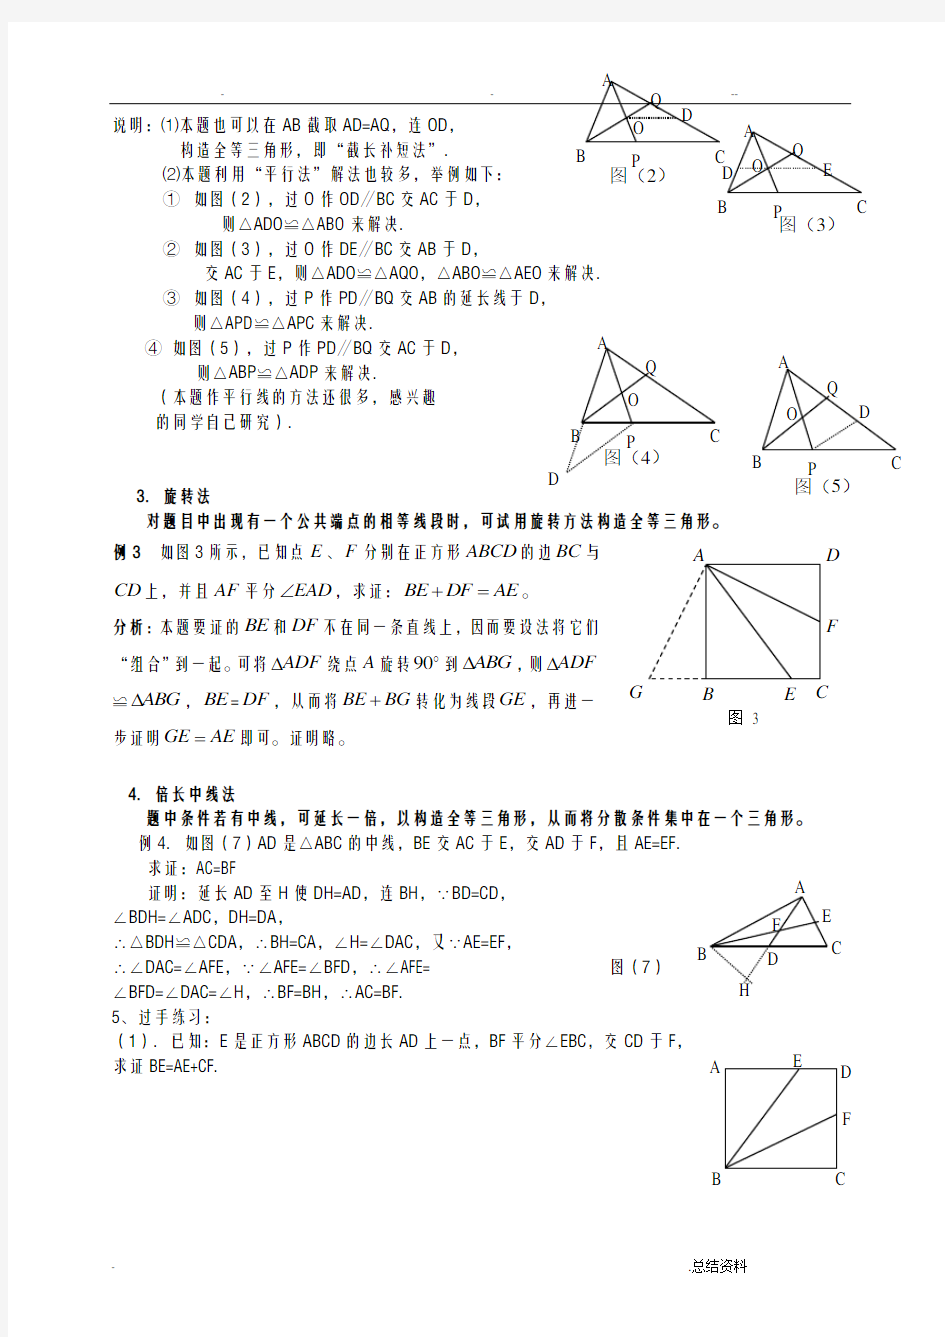 构造全等三角形种常用方法